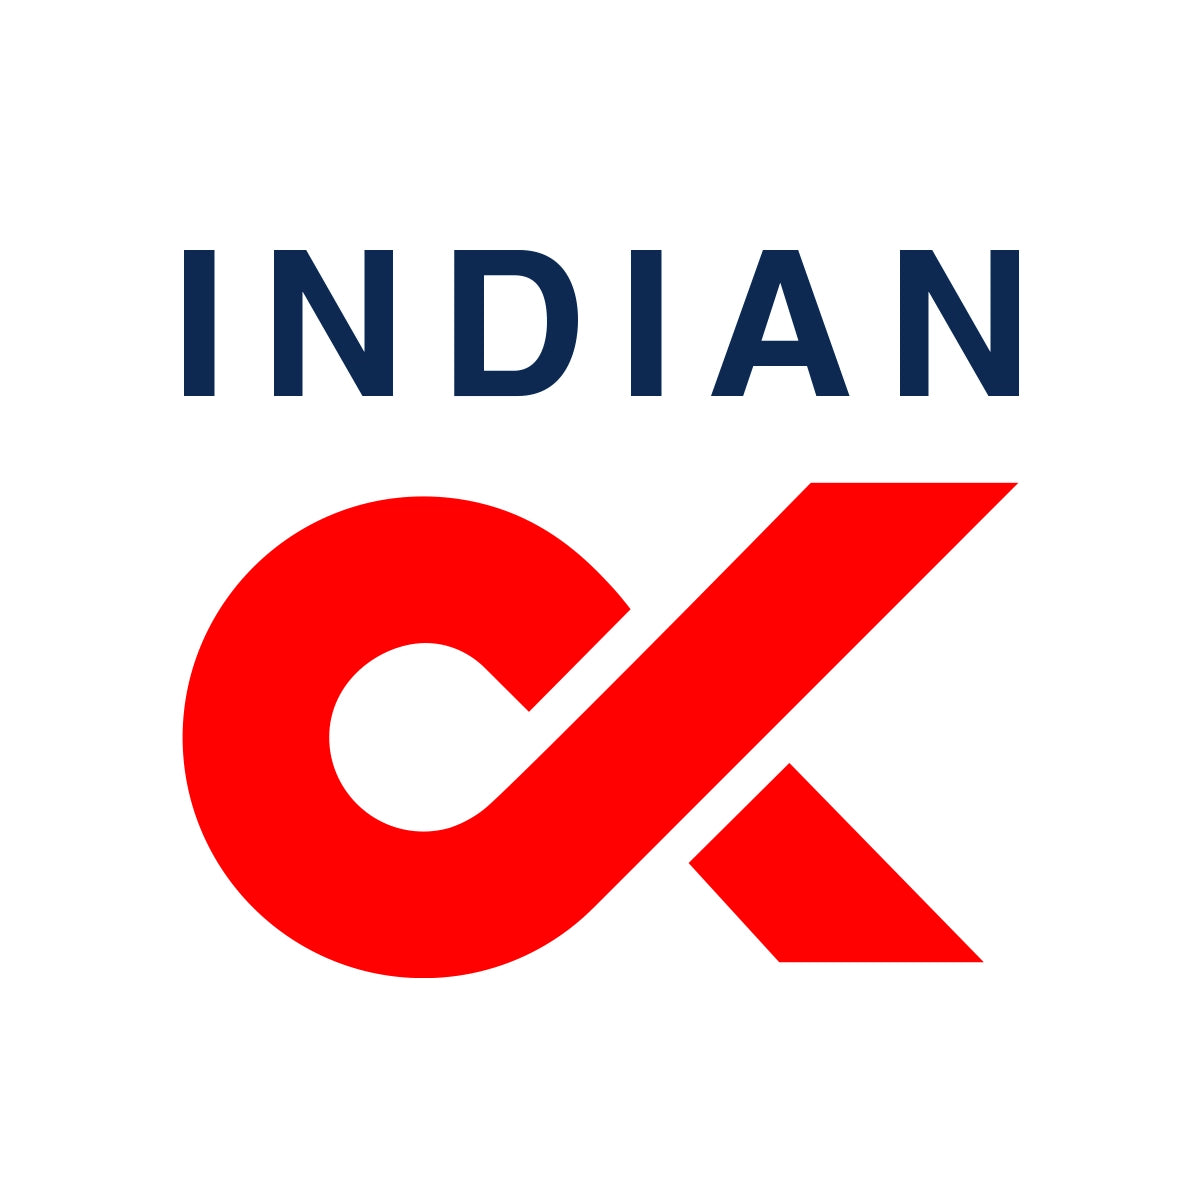 indiancx.com